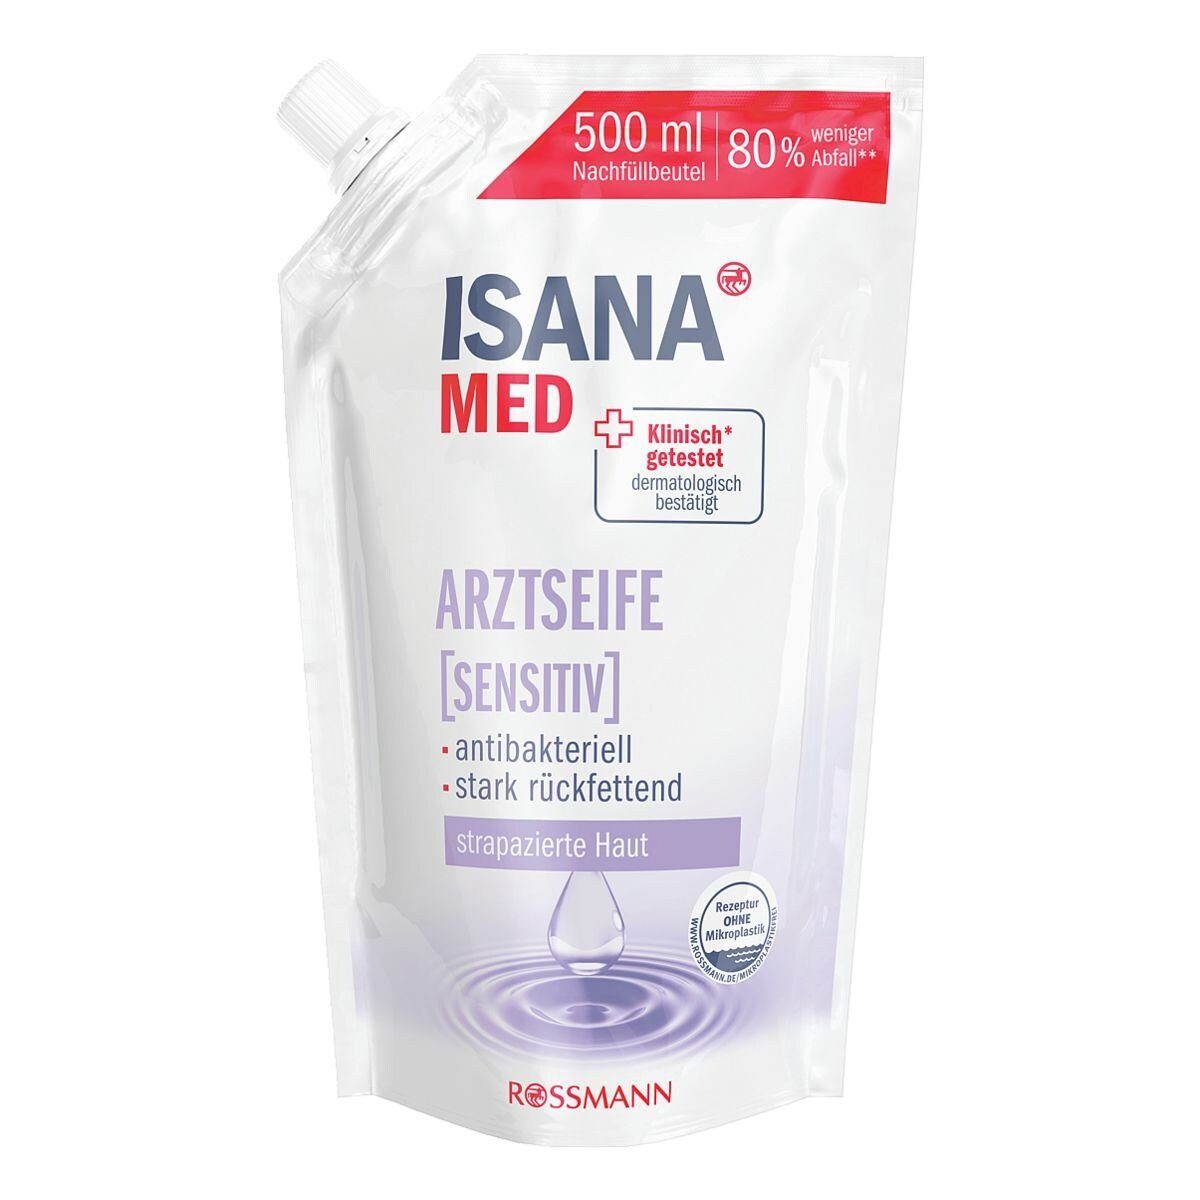 Flüssigseife ISANA rückfettend, stark Arztseife sensitiv, antibakteriell 500 und ml Nachfüllbeutel,